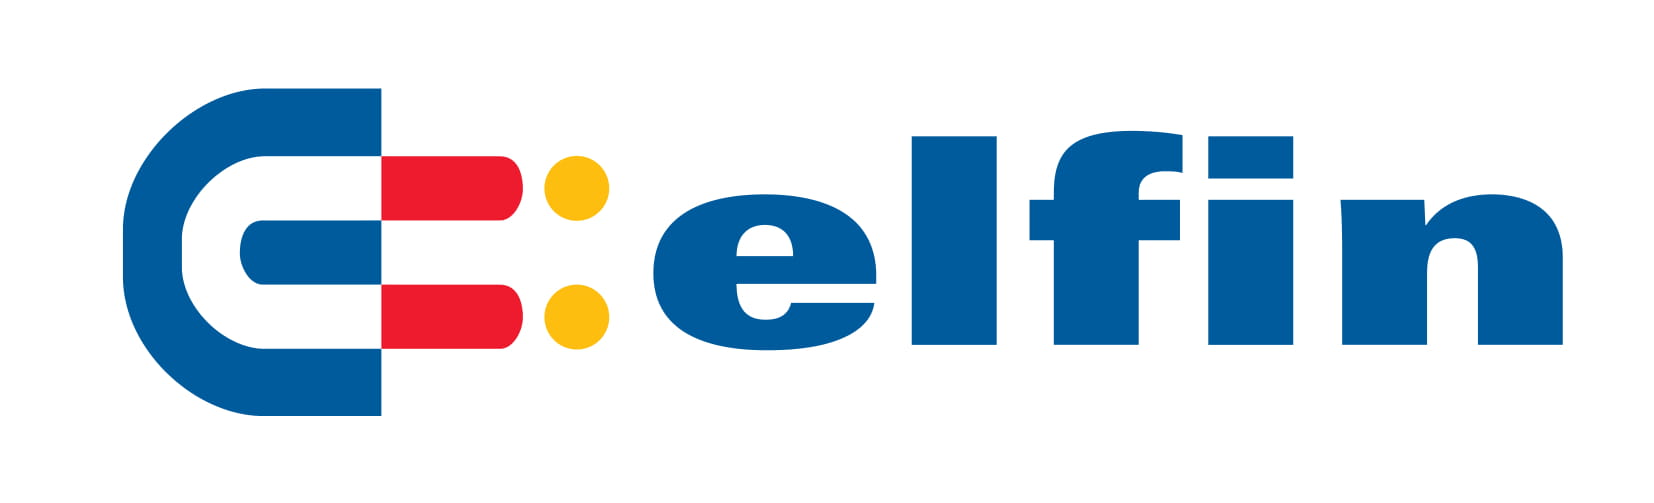 Elfin logo